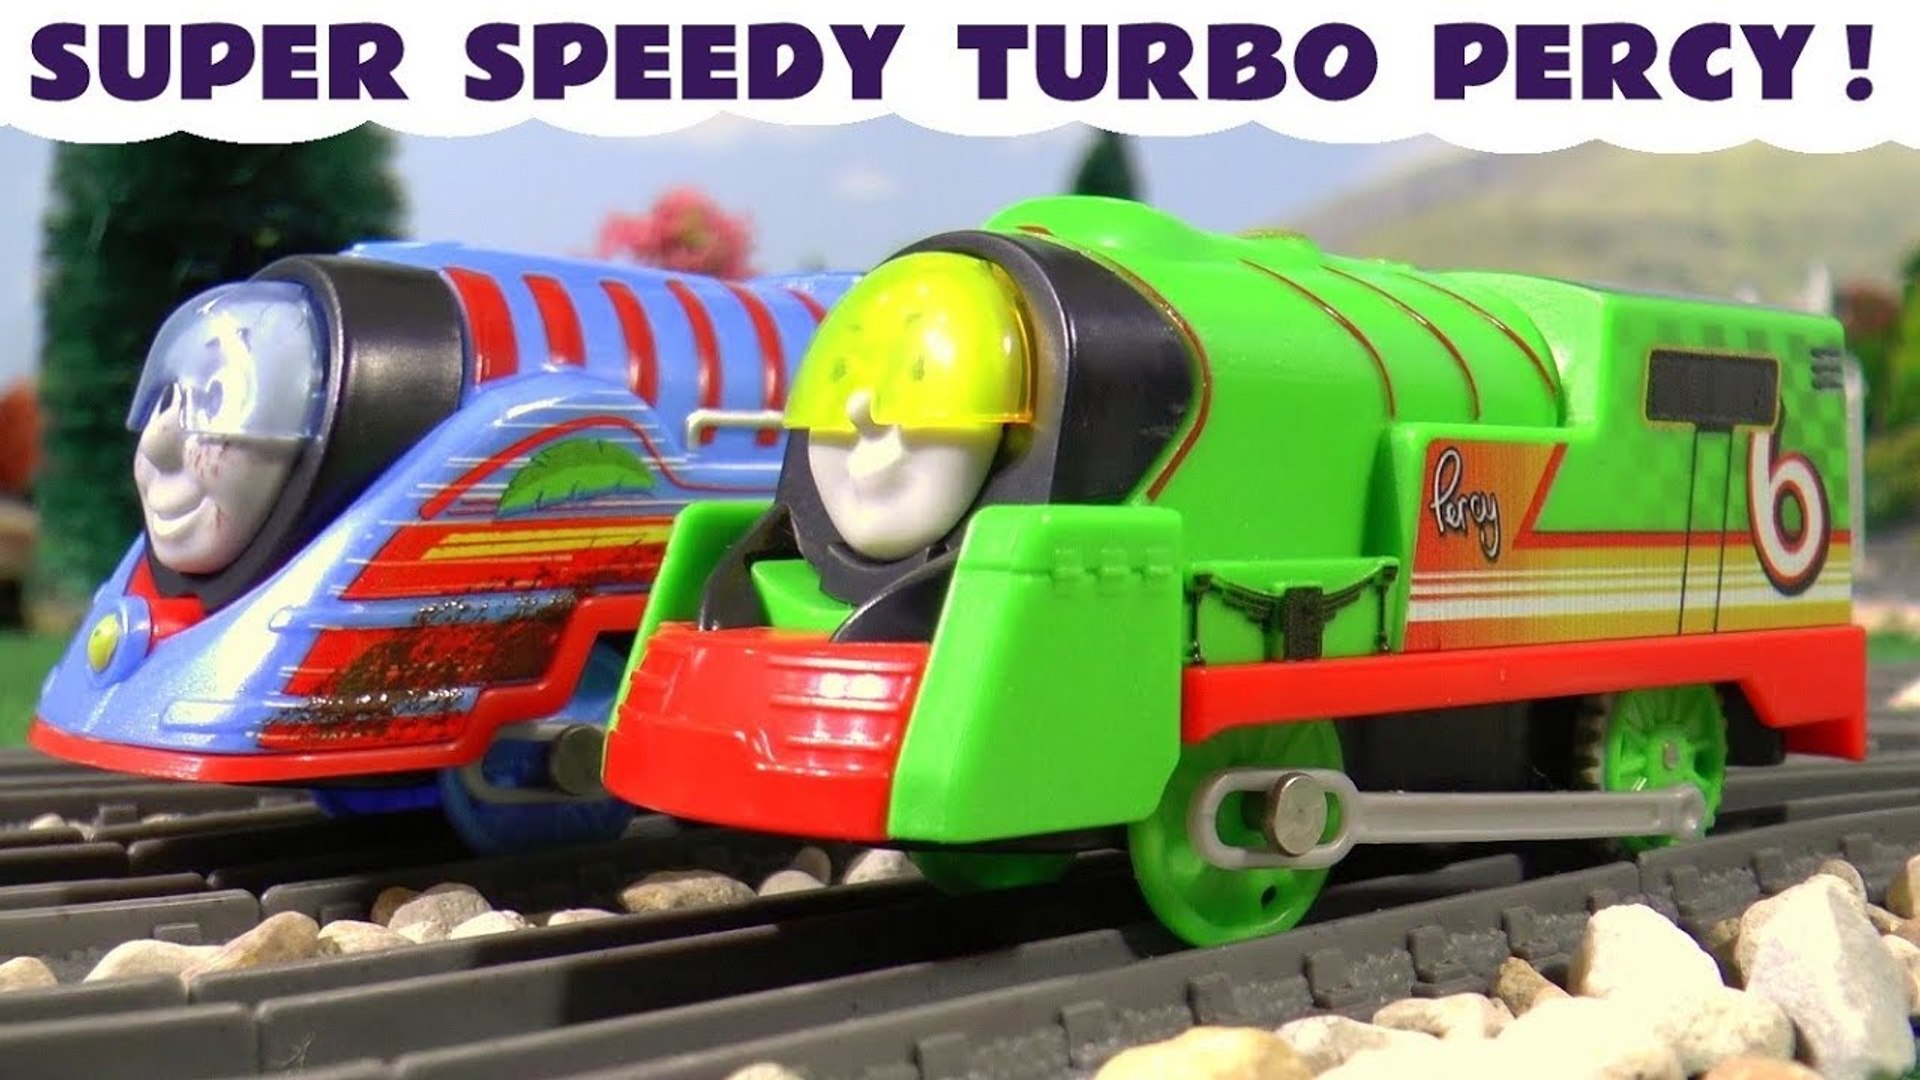 turbo percy train